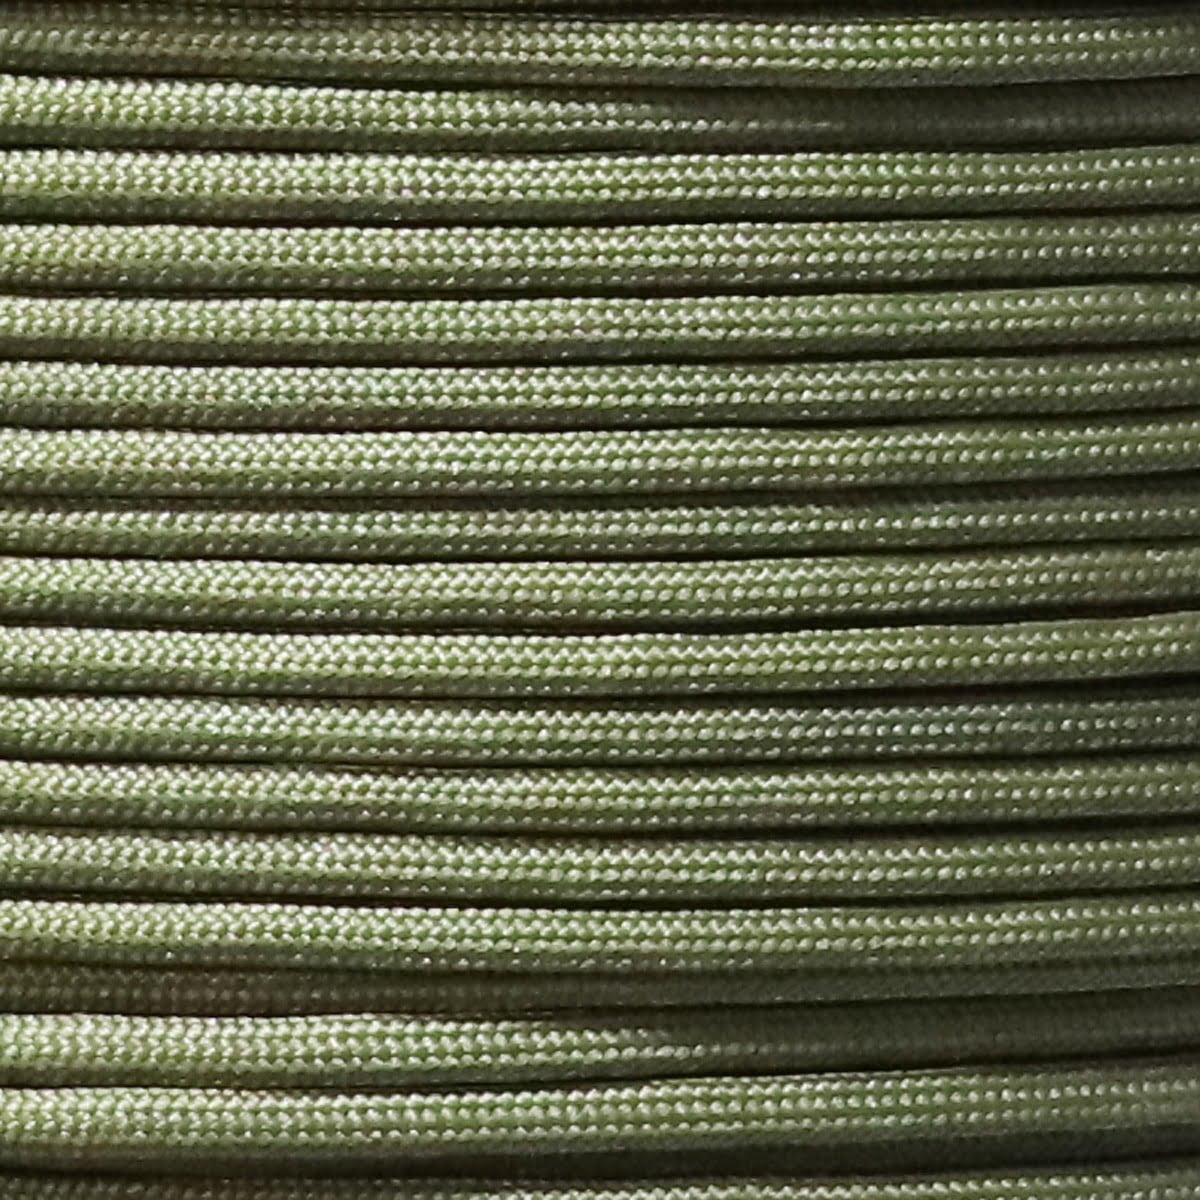 طناب 3.7mm هیپوکورد سبزارتشی کدH018 تیپ1